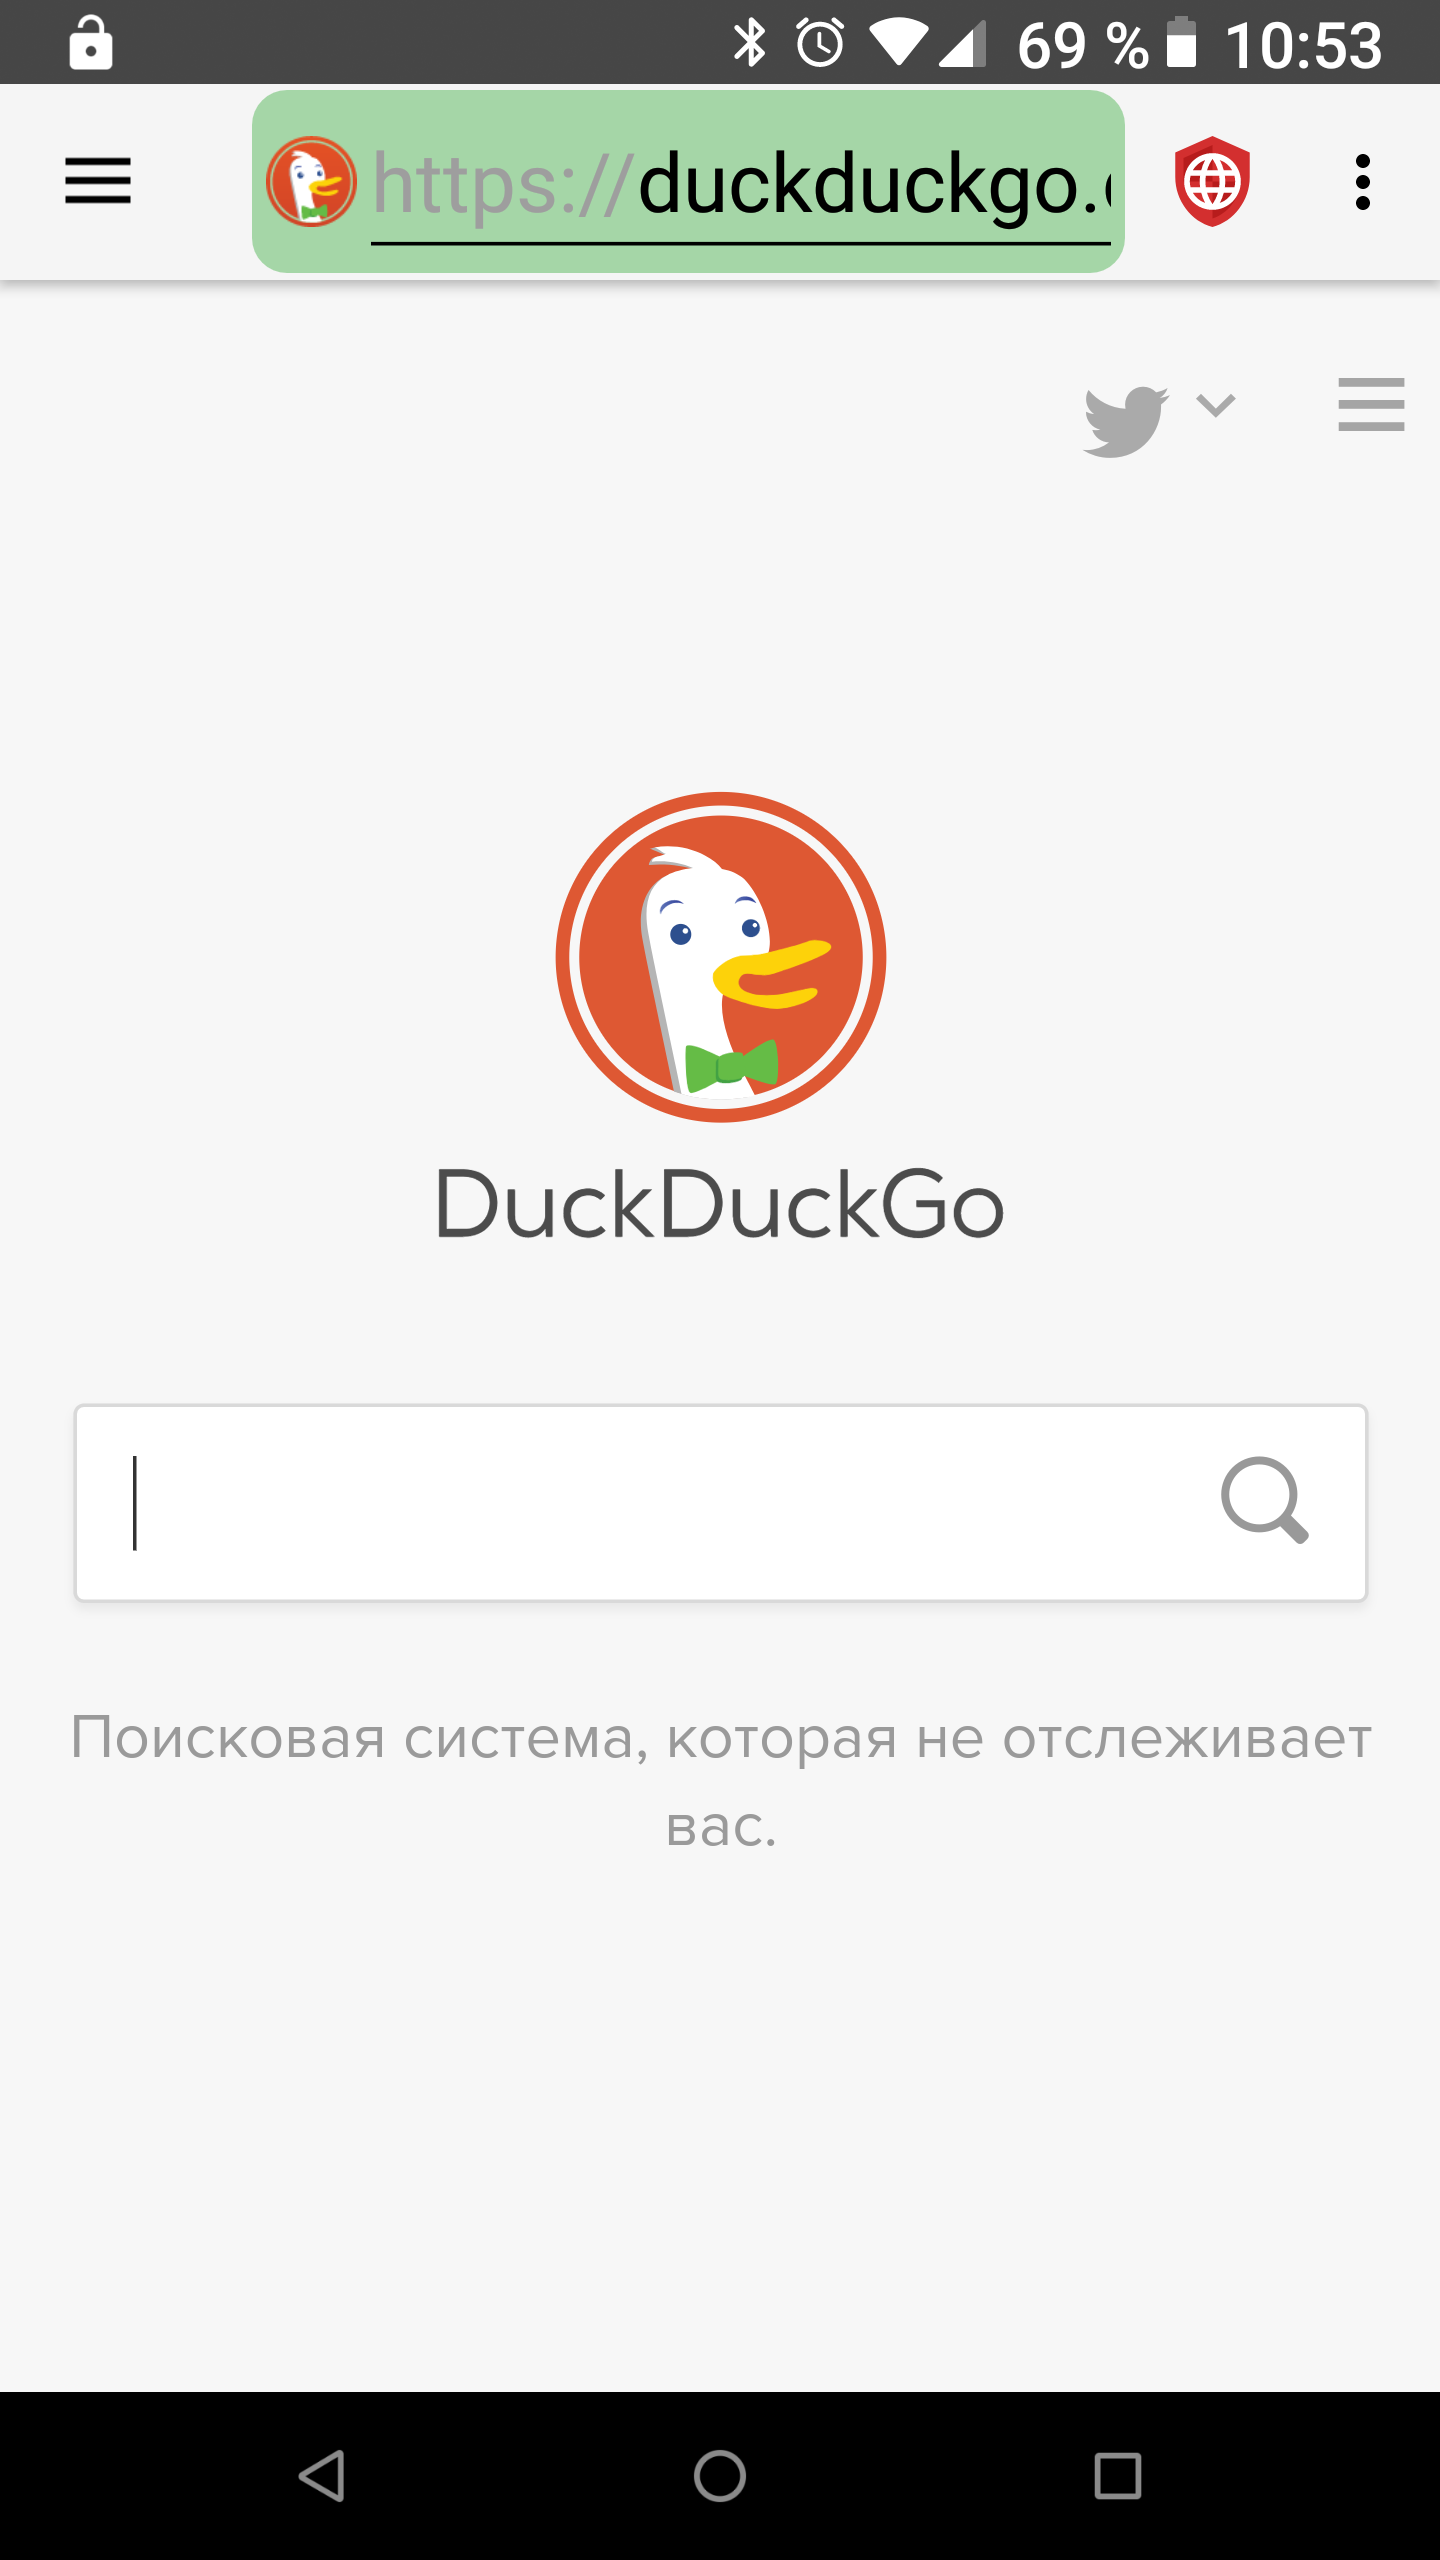 fastlane/metadata/android/ru/images/phoneScreenshots/01-DuckDuckGo.png